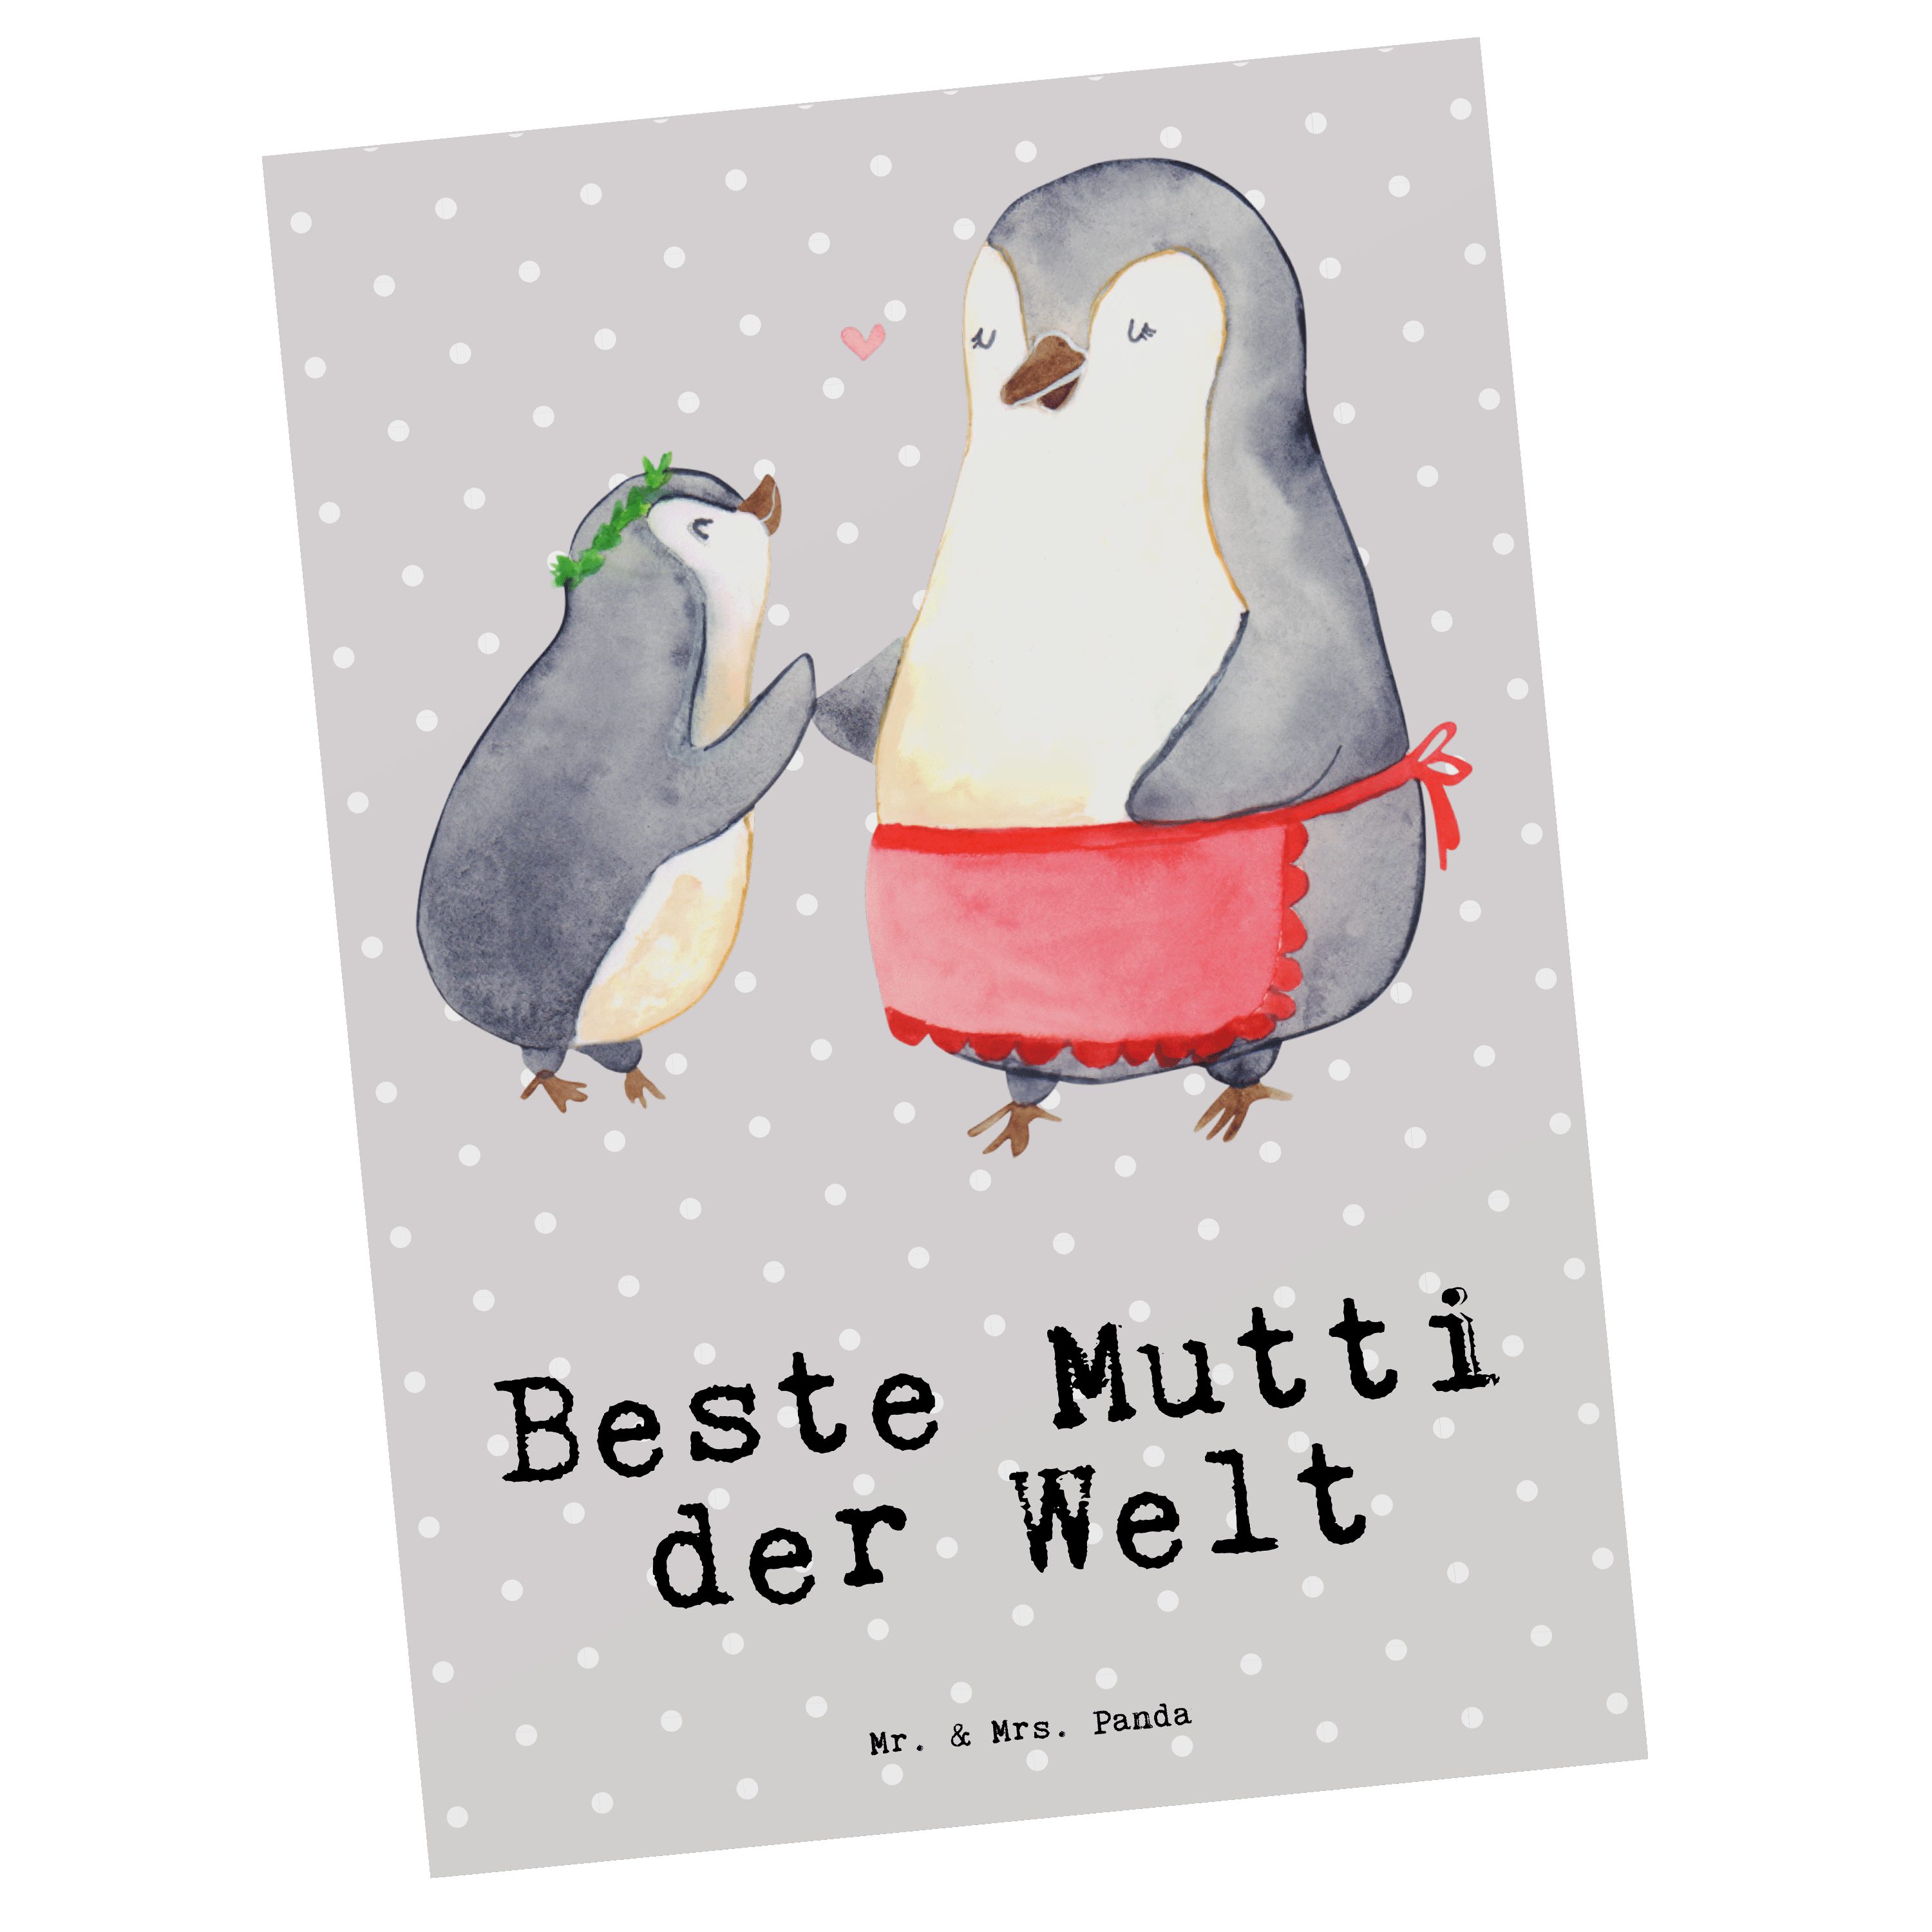 Mr. & Mrs. Panda Postkarte Pinguin Beste Mutti der Welt - Grau Pastell - Geschenk, Freude machen